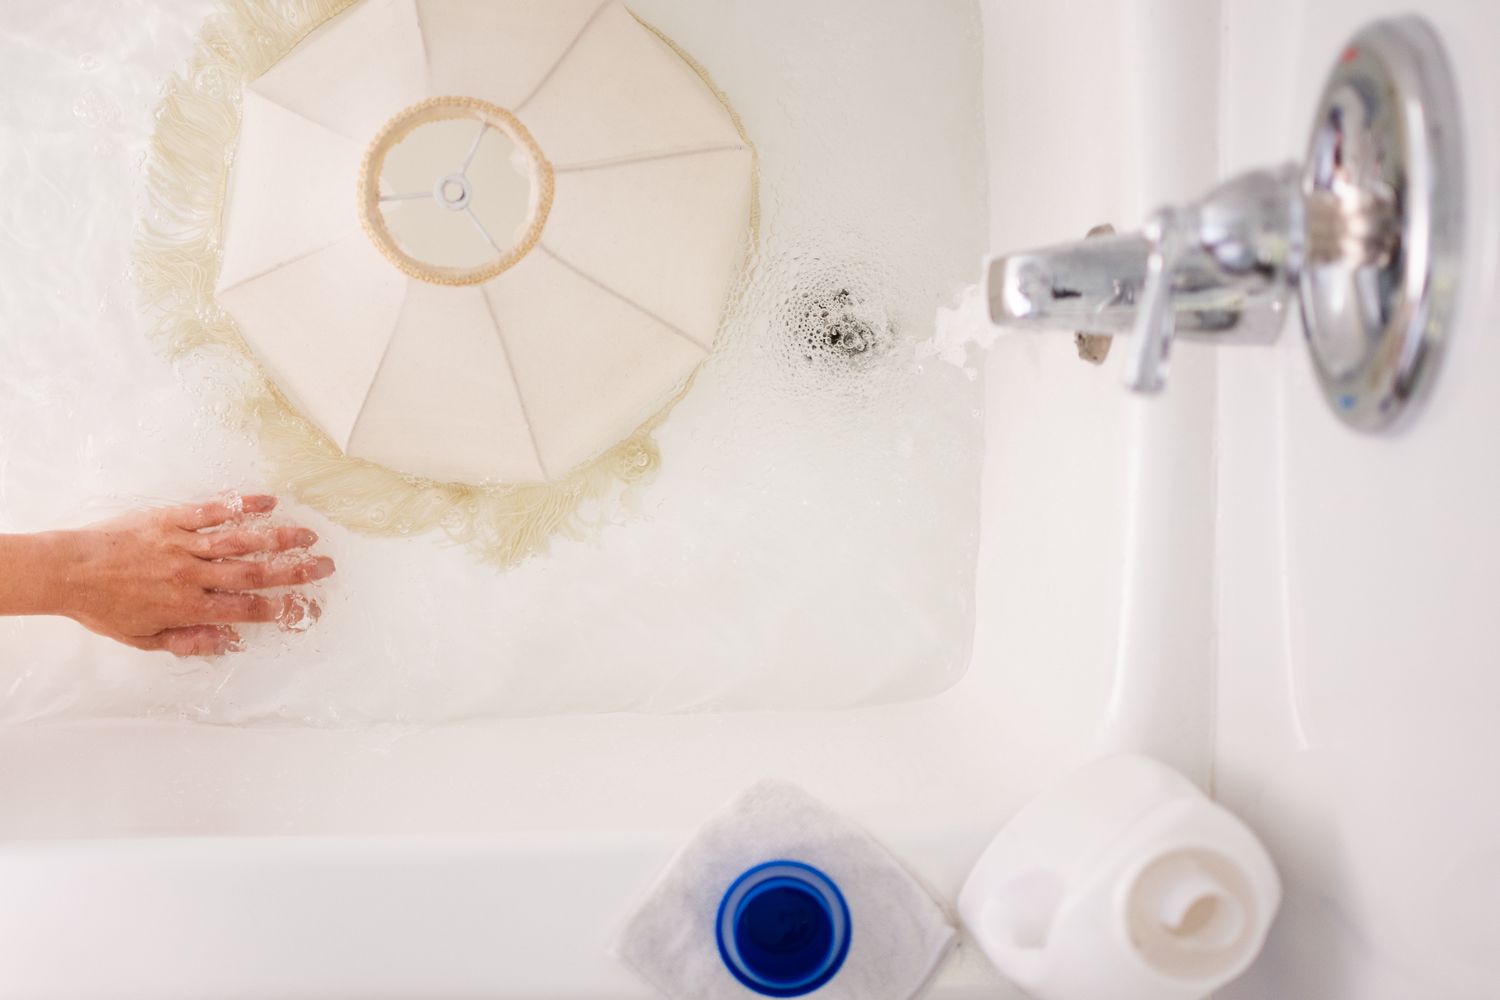 Abat-jour blanc placé dans la baignoire avec de l'eau douce pour être rincé